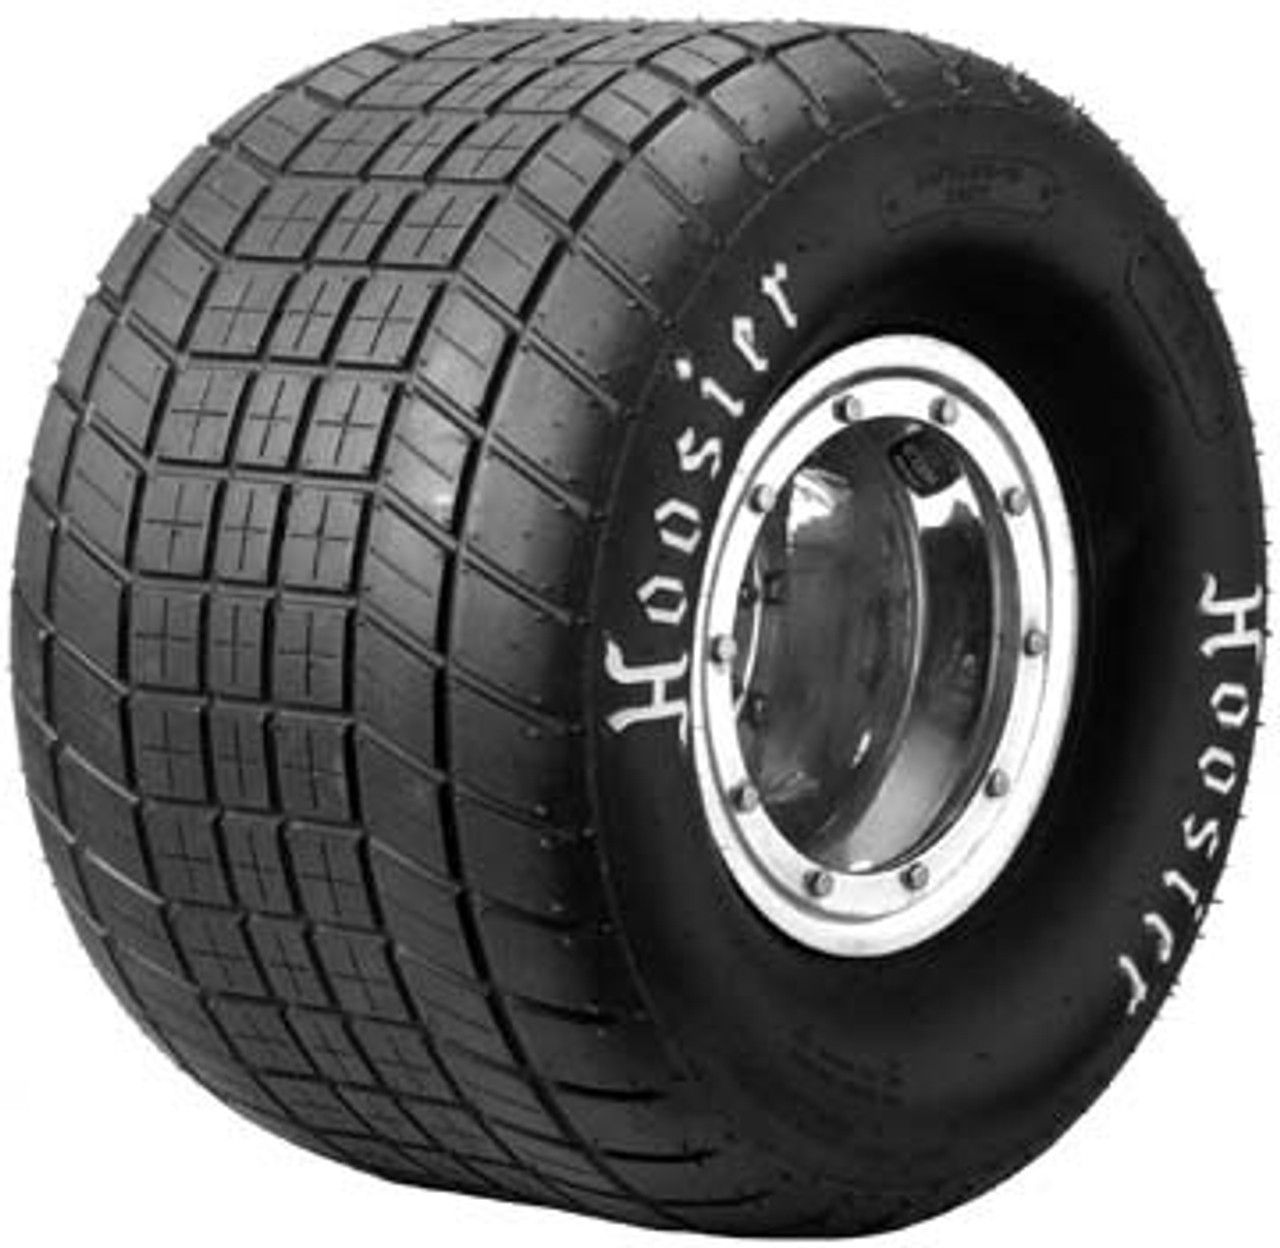 Hoosier Mini Sprint Dirt Tire 69.0 / 10.0 W-10 KS1 - 42239KS1